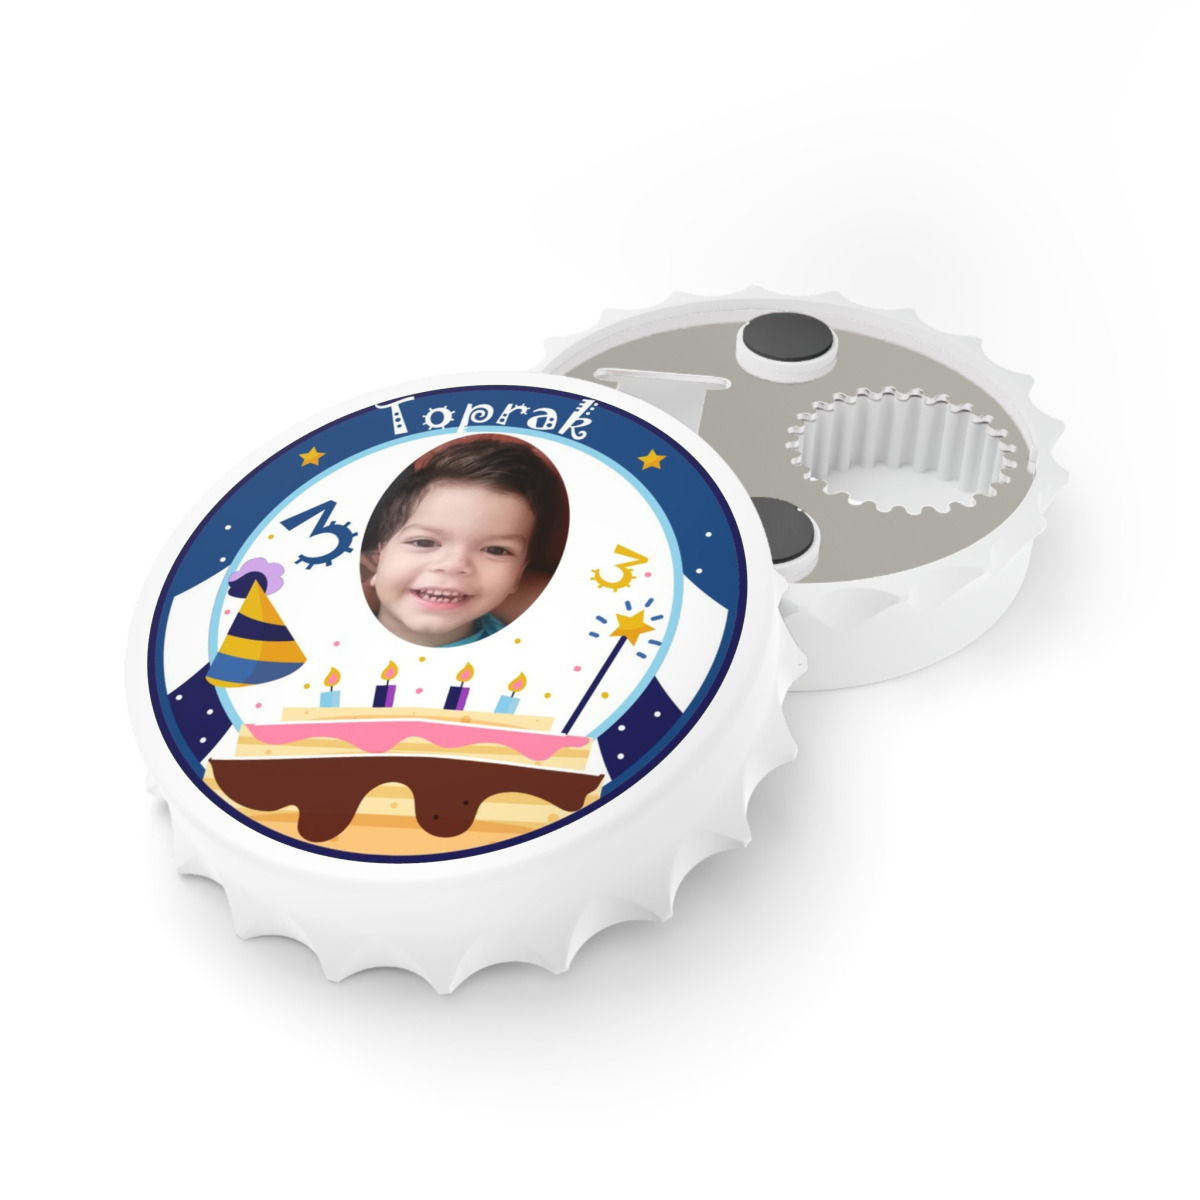 50 Adet Kapak Açacak Resimli Kişiye Özel Magnet Buzdolabı Süsü, Doğum Günü Erkek Çocuk 1